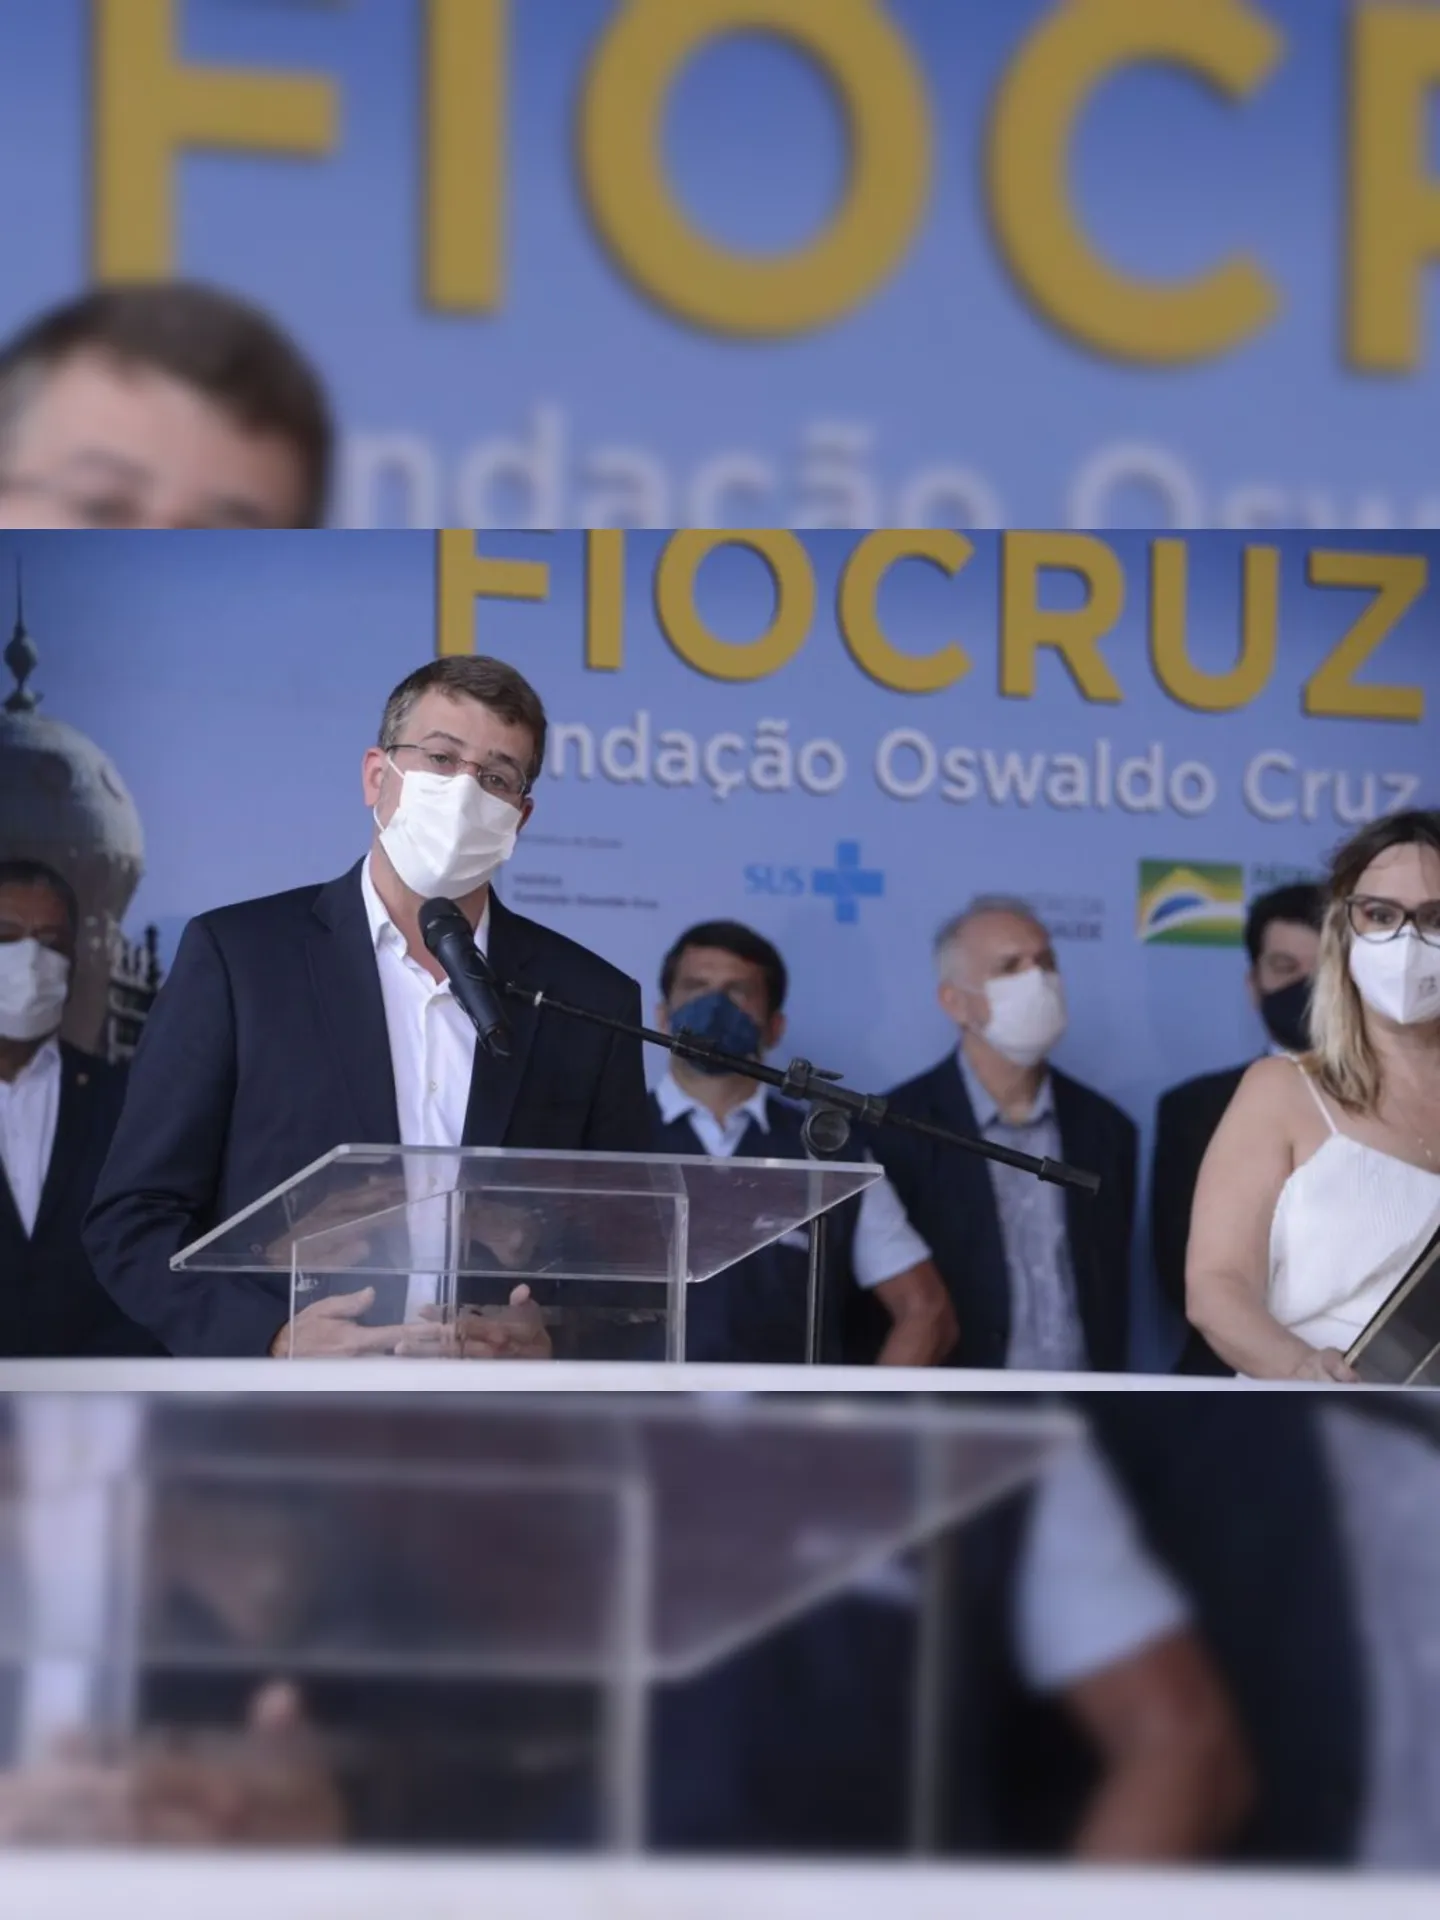 O secretário municipal de saúde, Daniel Soranz durante evento que marcou a liberação das vacinas de Oxford/AstraZeneca para serem entregues ao Ministério da Saúde e distribuídas no Brasil.